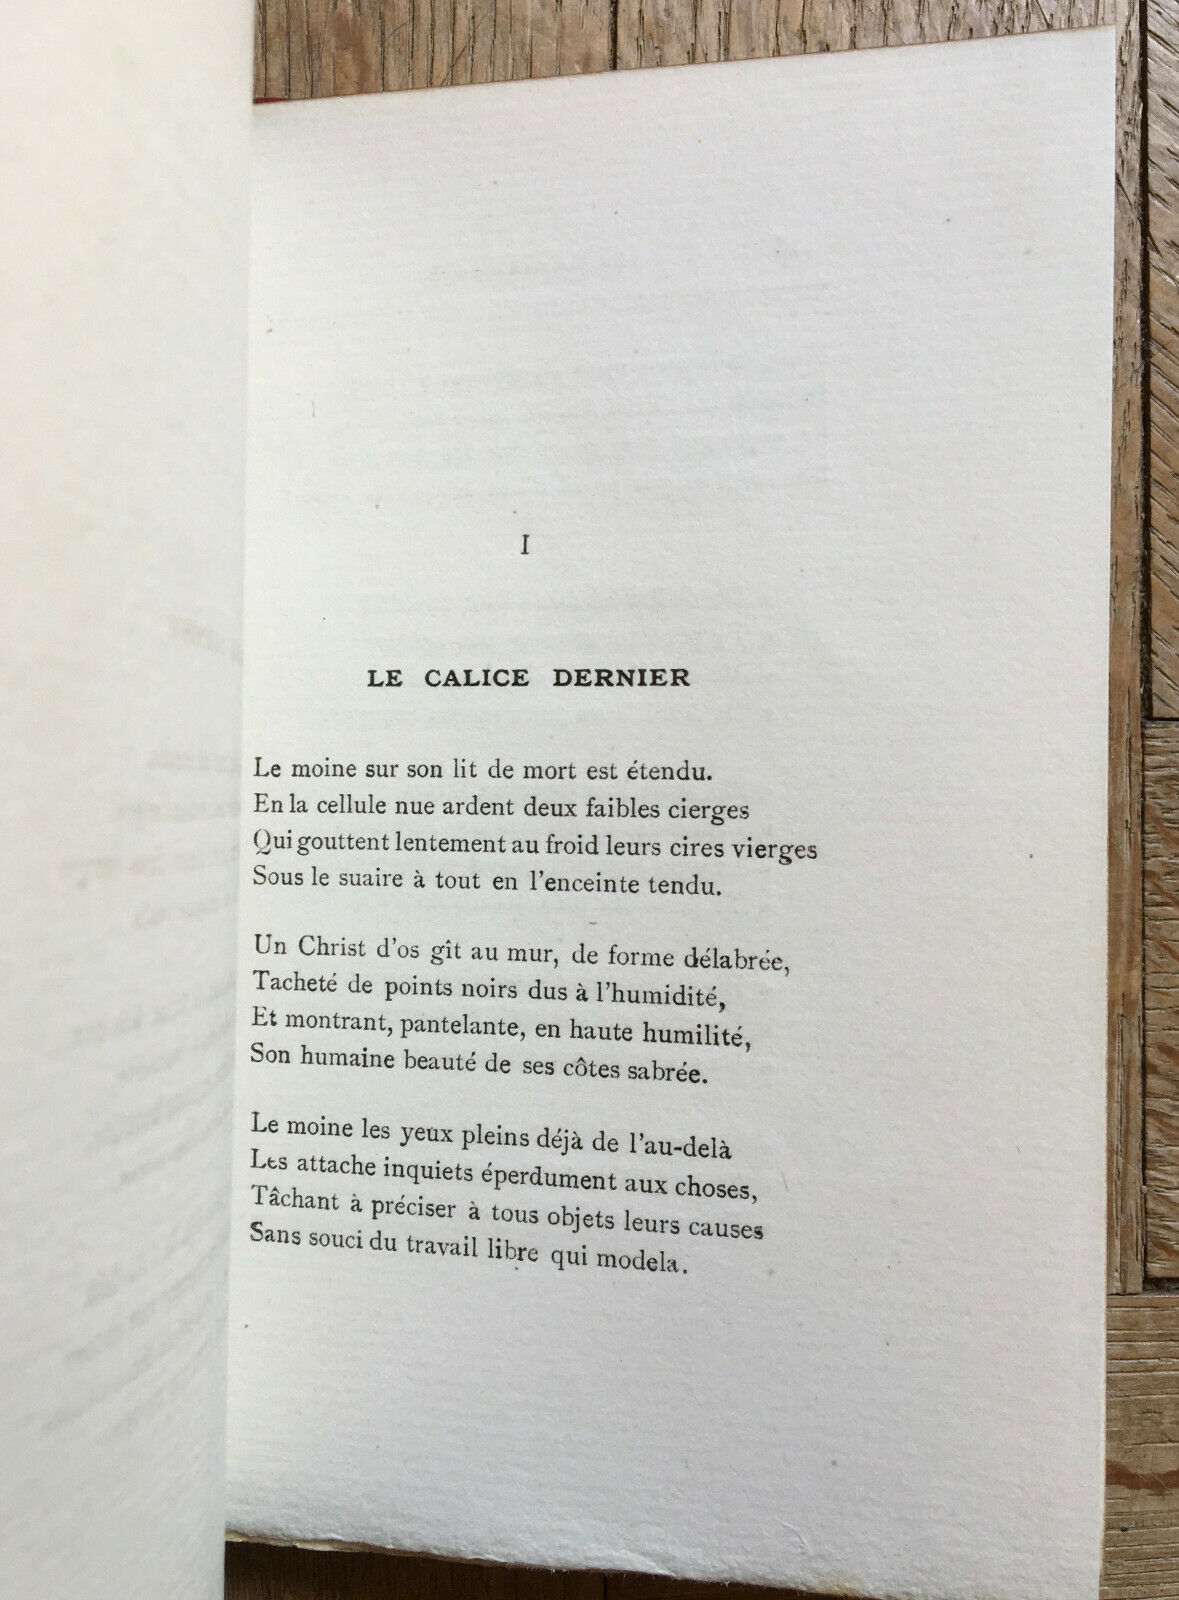 A. Jacques Ballieu — Les Navrements — é.o. — autograph — Ollendorff — 1895